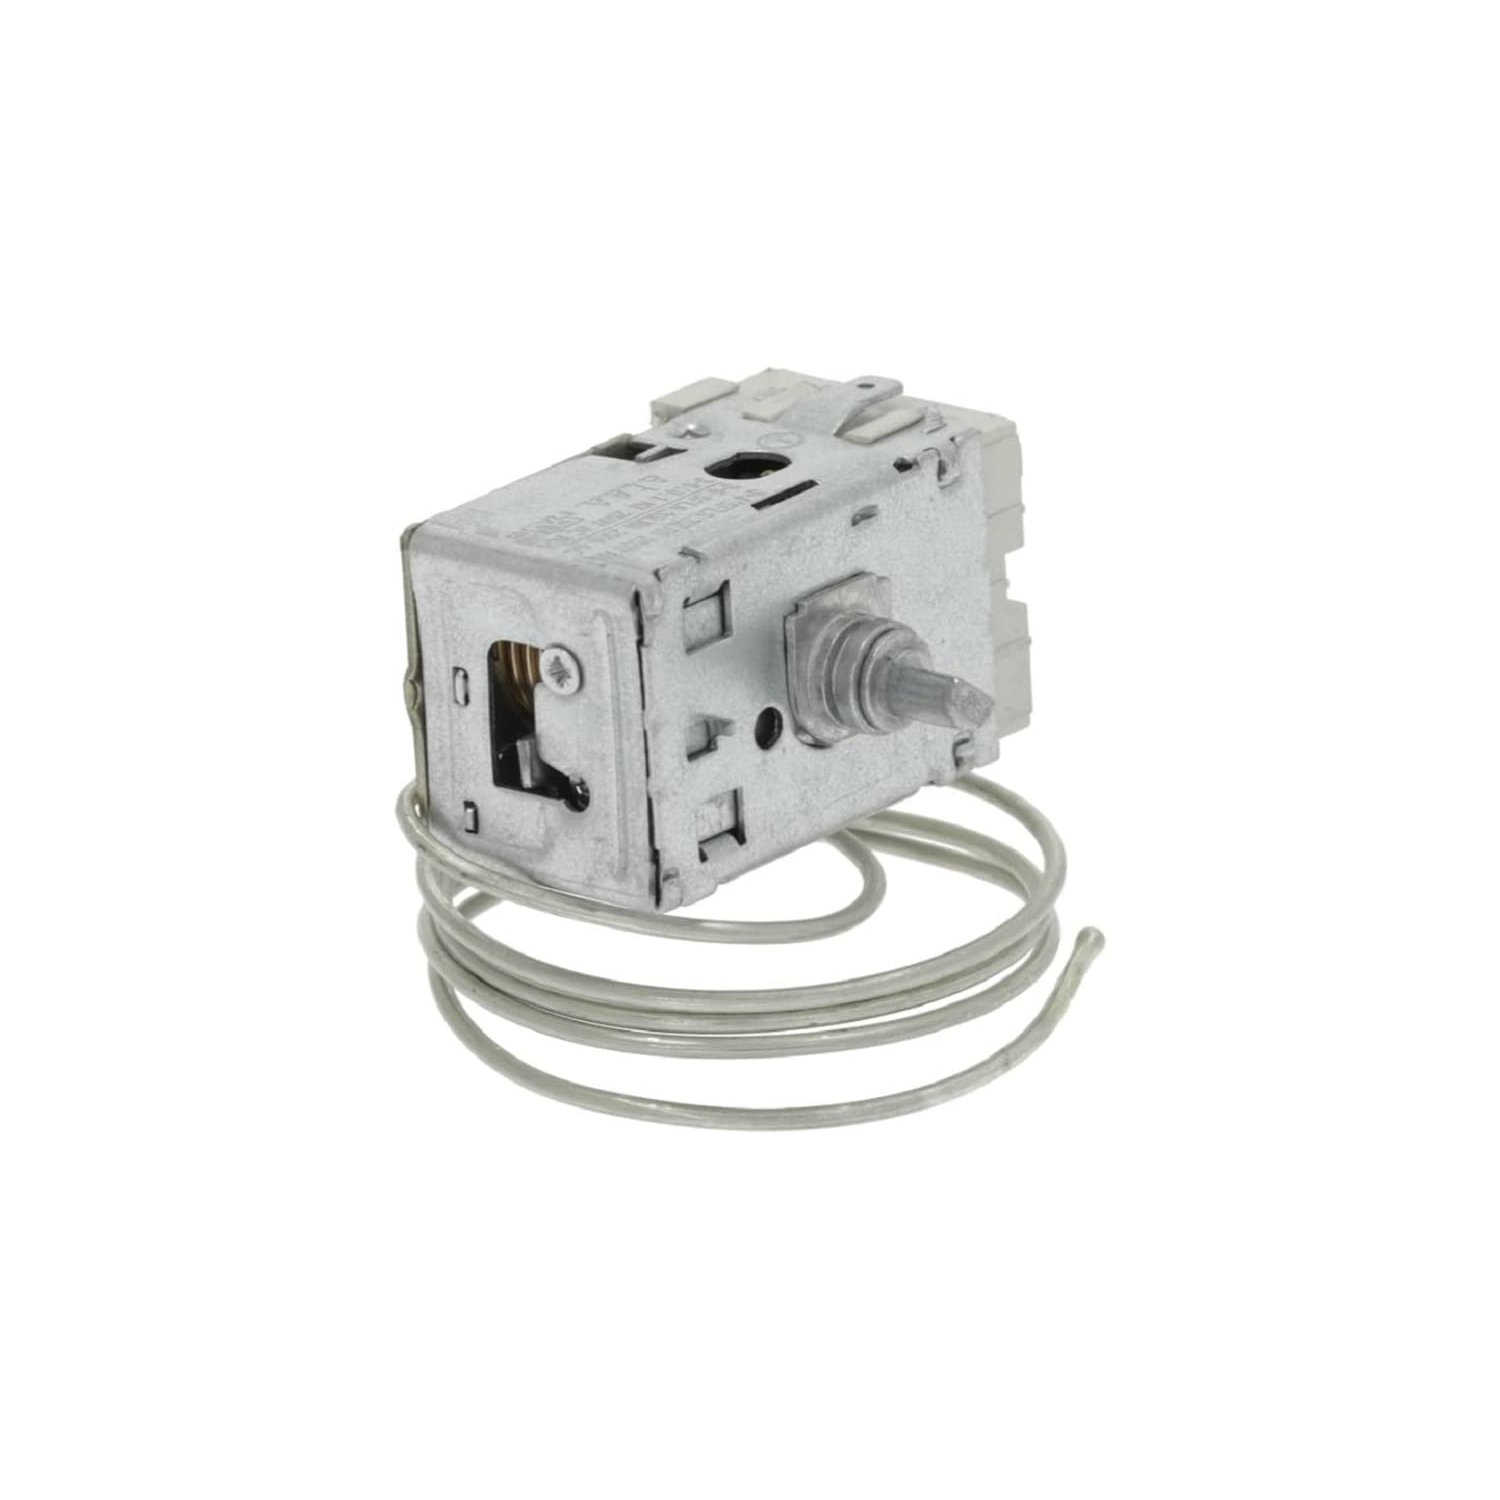 Thermostat Atea A13-0696R für Kühlschrank, min 4,5 °C, max -33 °C, L 650 mm, 4,8mm AMP